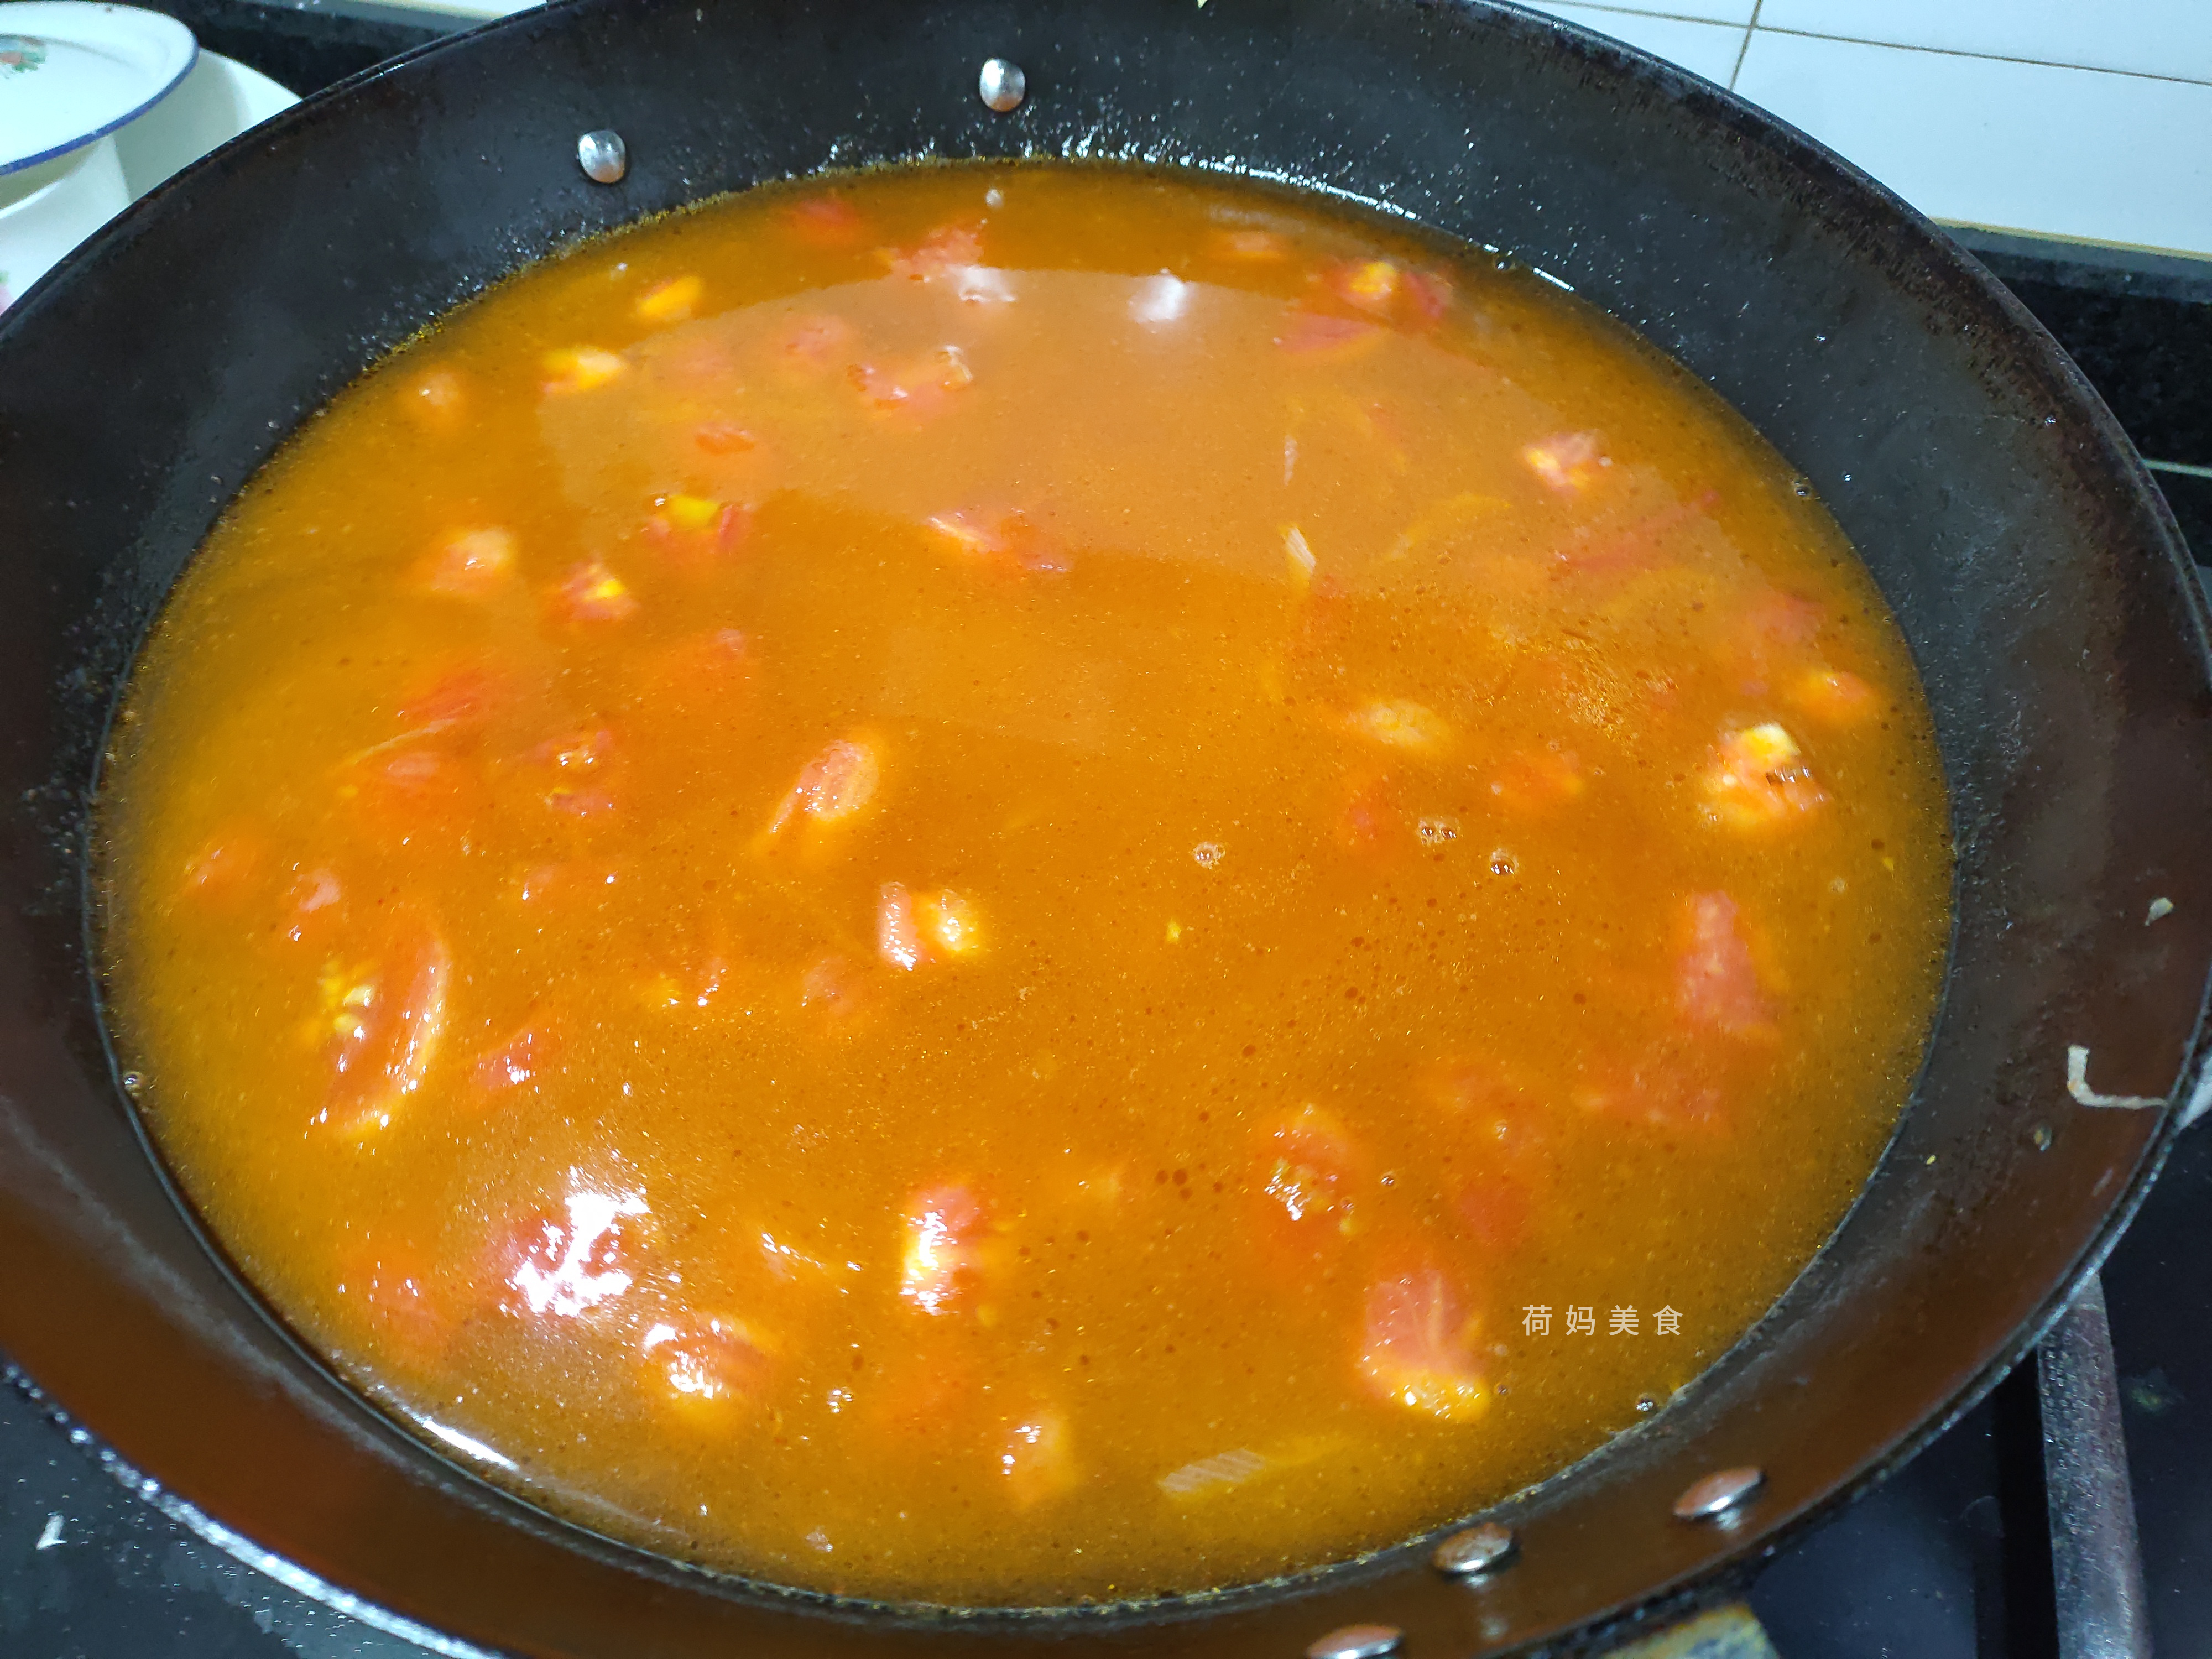 火锅店的番茄锅底,教你在家制作,简单几步,酸爽开胃,好吃不腻